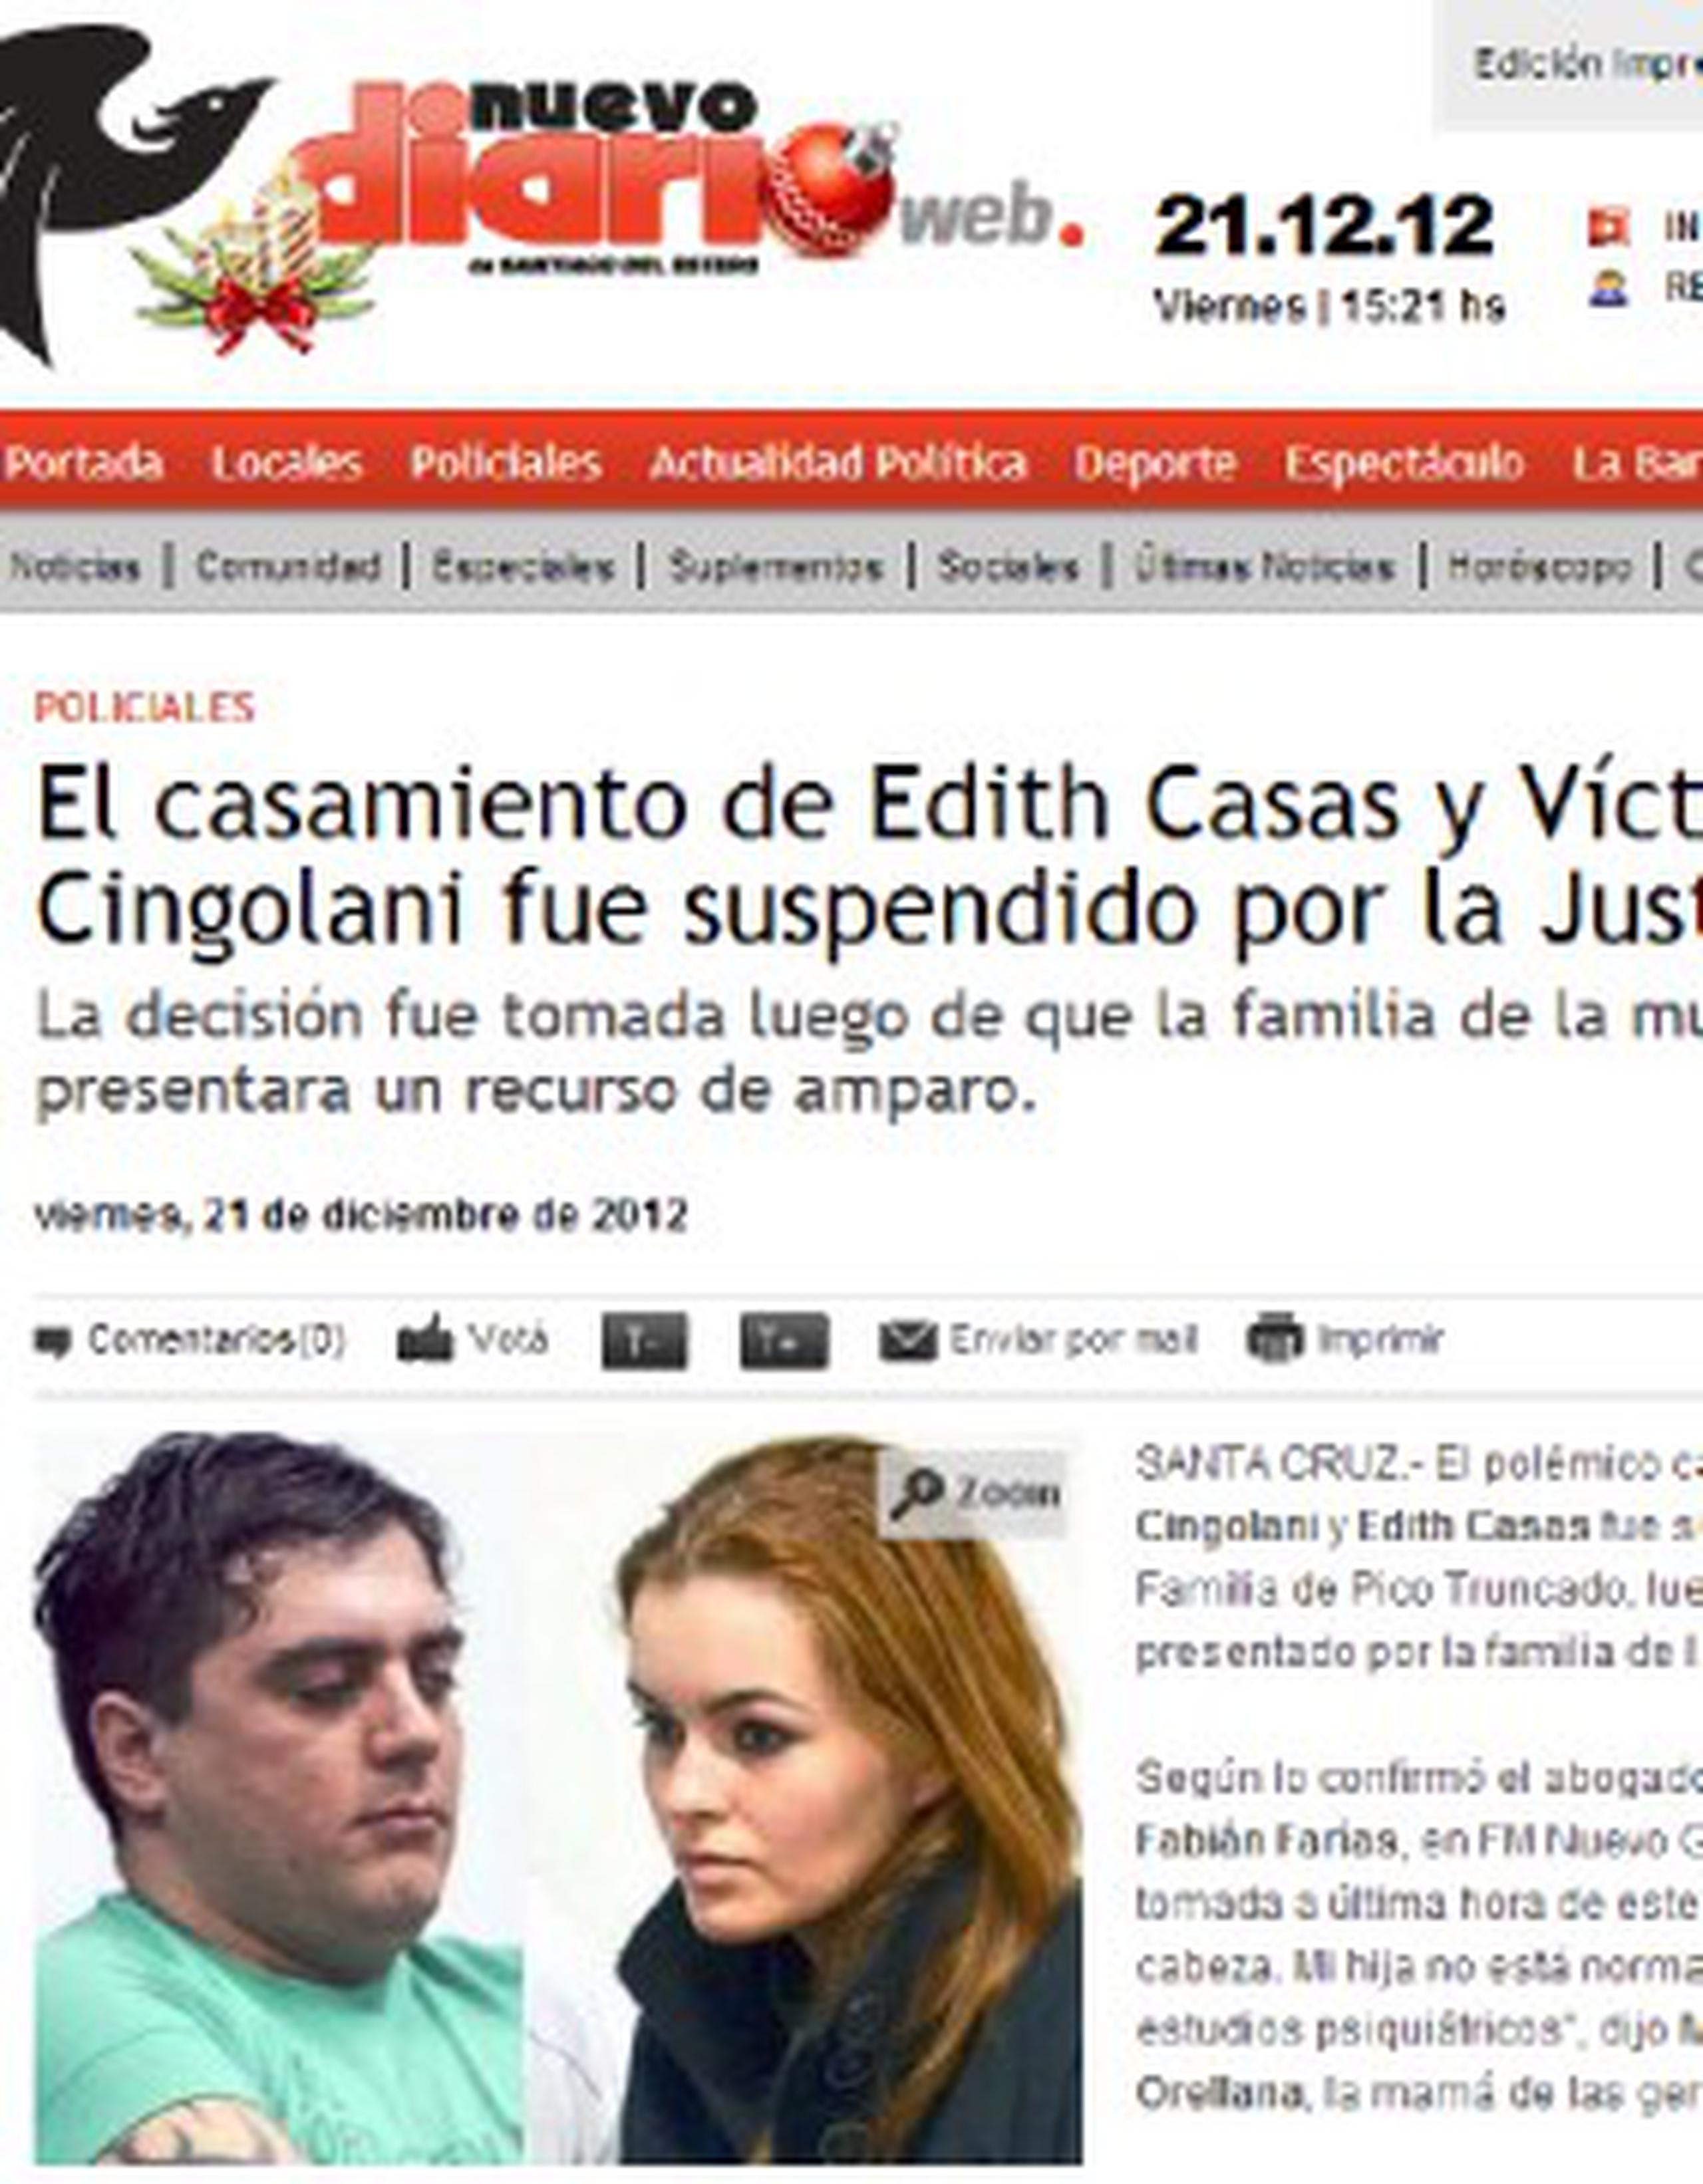 La jueza suspendió la boda de Víctor Cingolani y Edith Casas por una presentación judicial realizada por la familia de las gemelas. (nuevodiarioweb.ar)